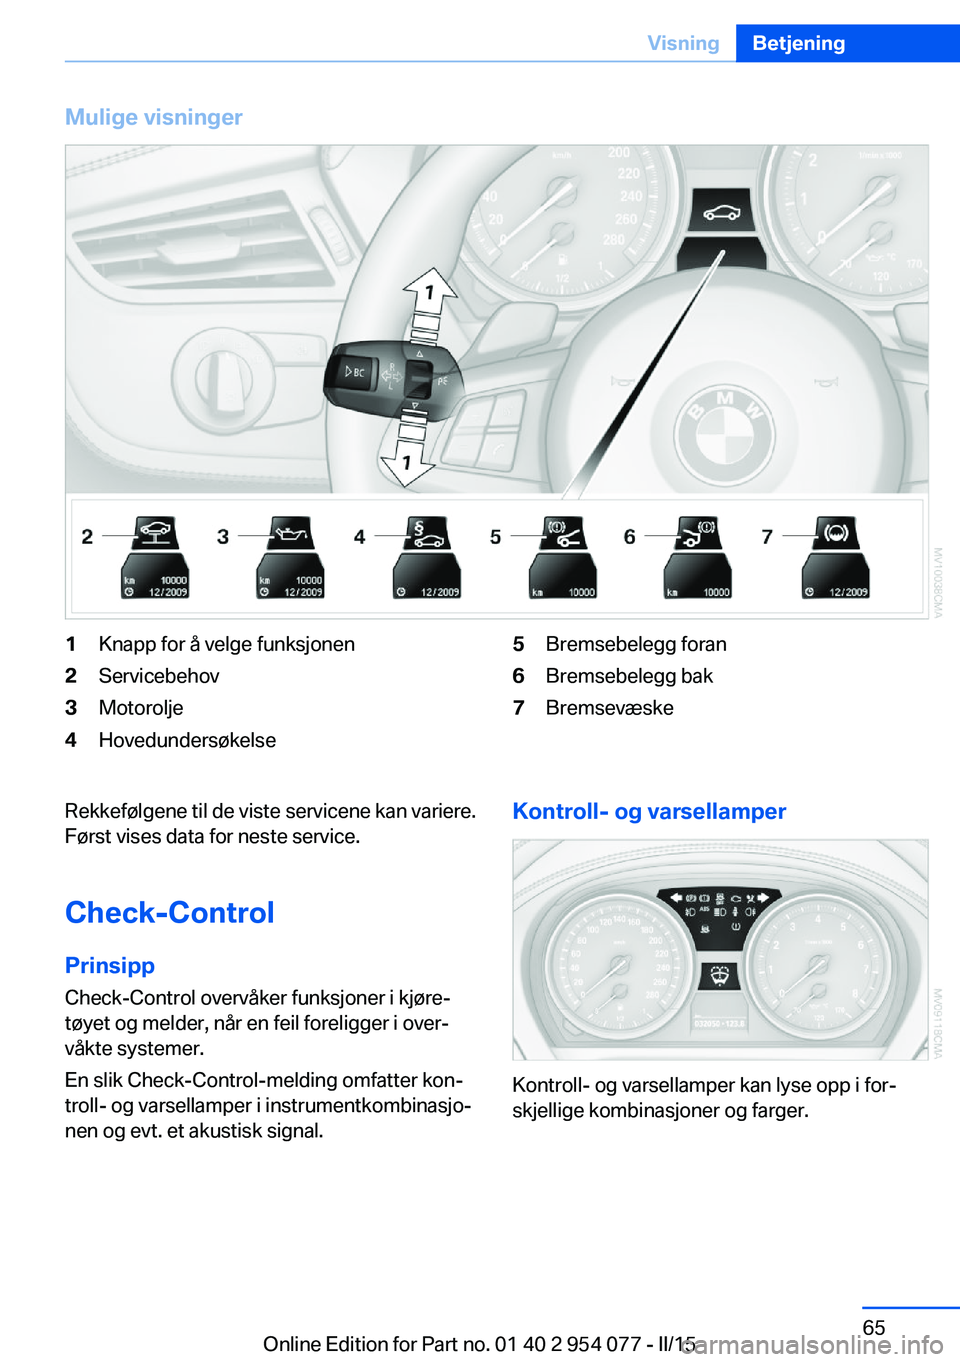 BMW Z4 2016  InstruksjonsbØker (in Norwegian) Mulige visninger1Knapp for å velge funksjonen2Servicebehov3Motorolje4Hovedundersøkelse5Bremsebelegg foran6Bremsebelegg bak7BremsevæskeRekkefølgene til de viste servicene kan variere.
Først vises 